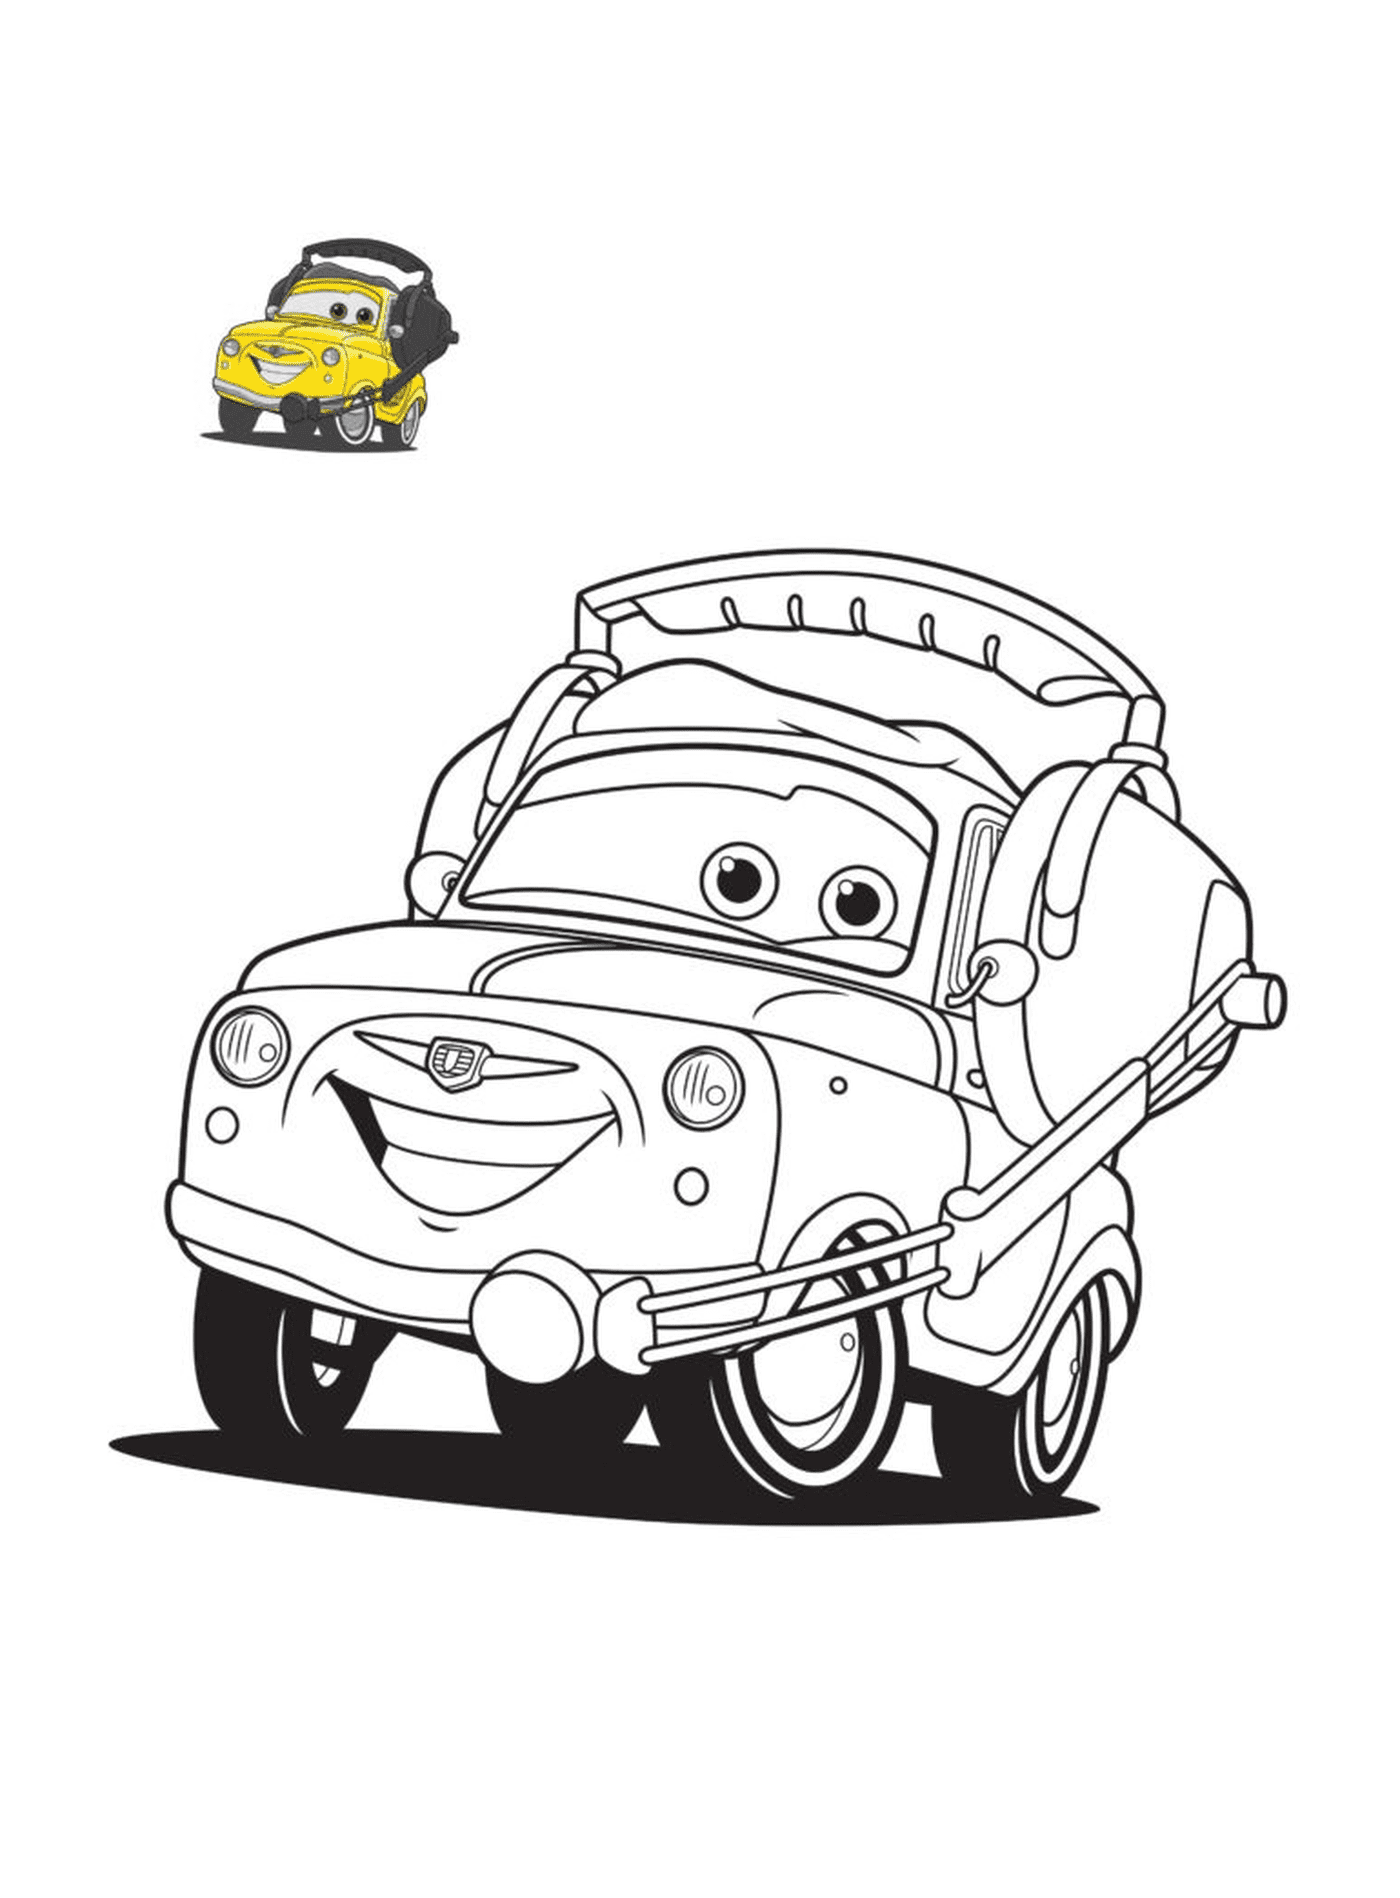 coloriage cars 3 luigi personnage dans film cars voiture jaune